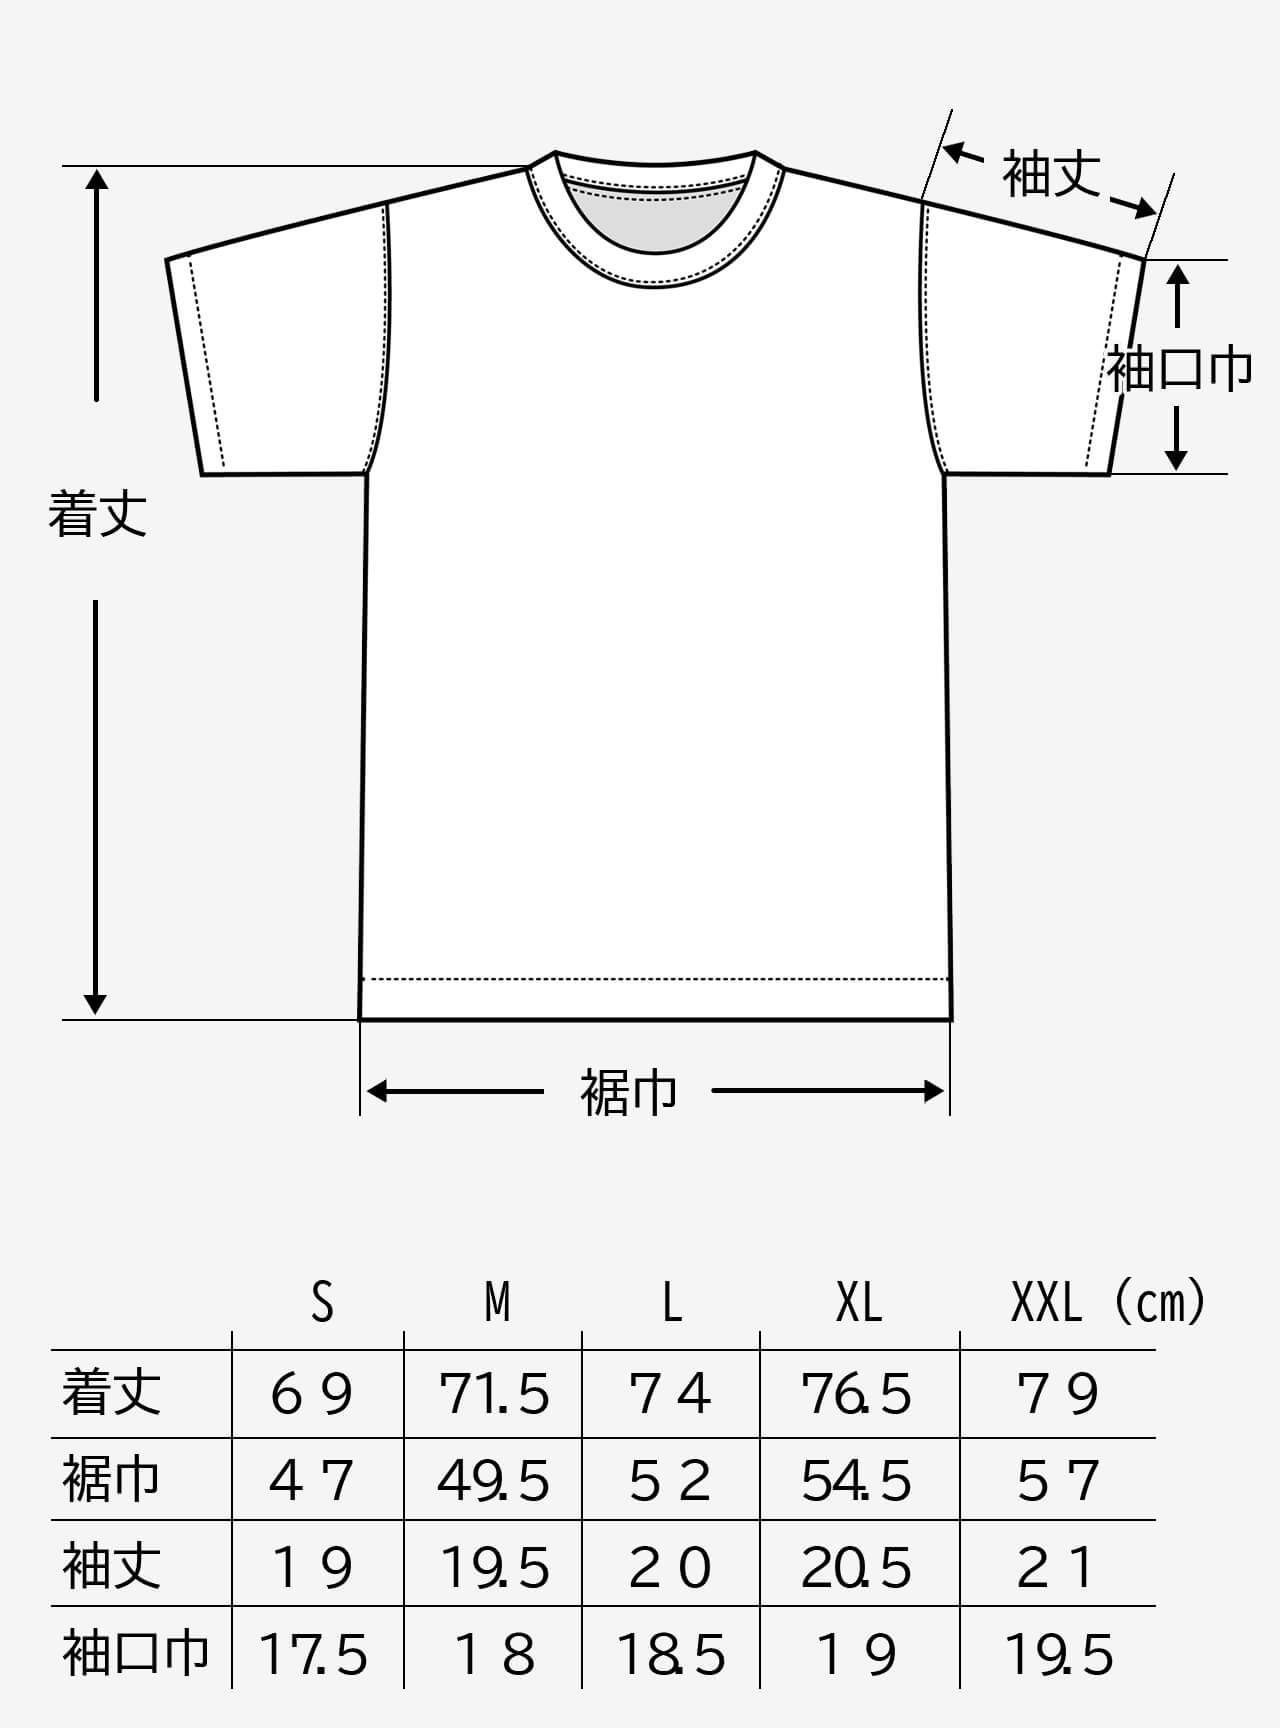 JBBF T-Shirt 白T 刺繍ｘ背面競技名 白プリント